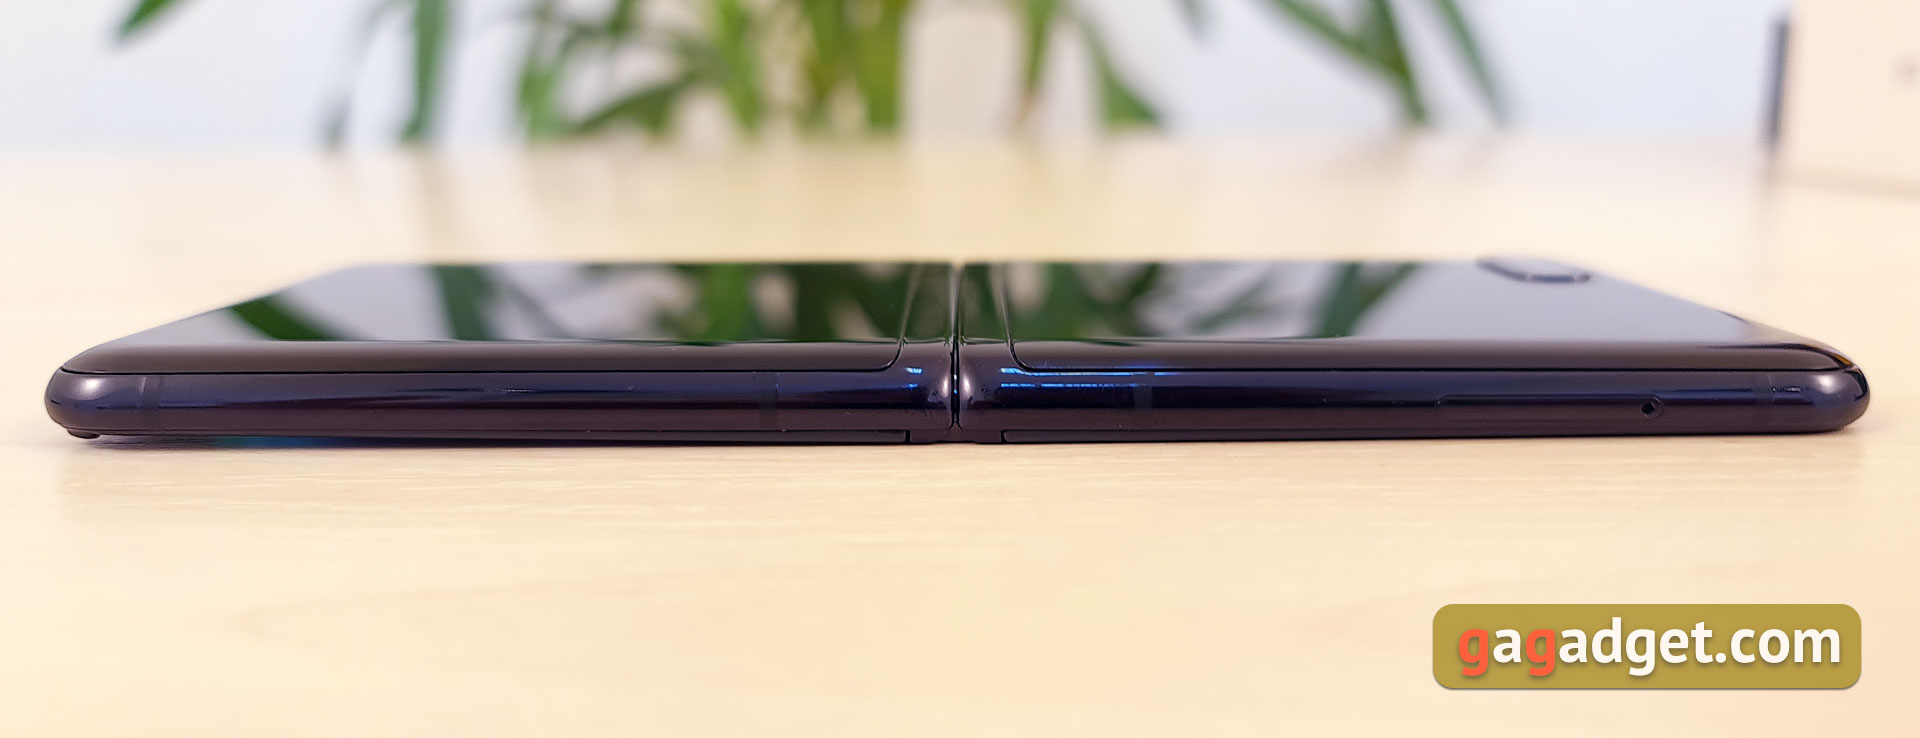 Обзор Samsung Galaxy Z Flip: раскладушки возвращаются с гибкими дисплеями-12